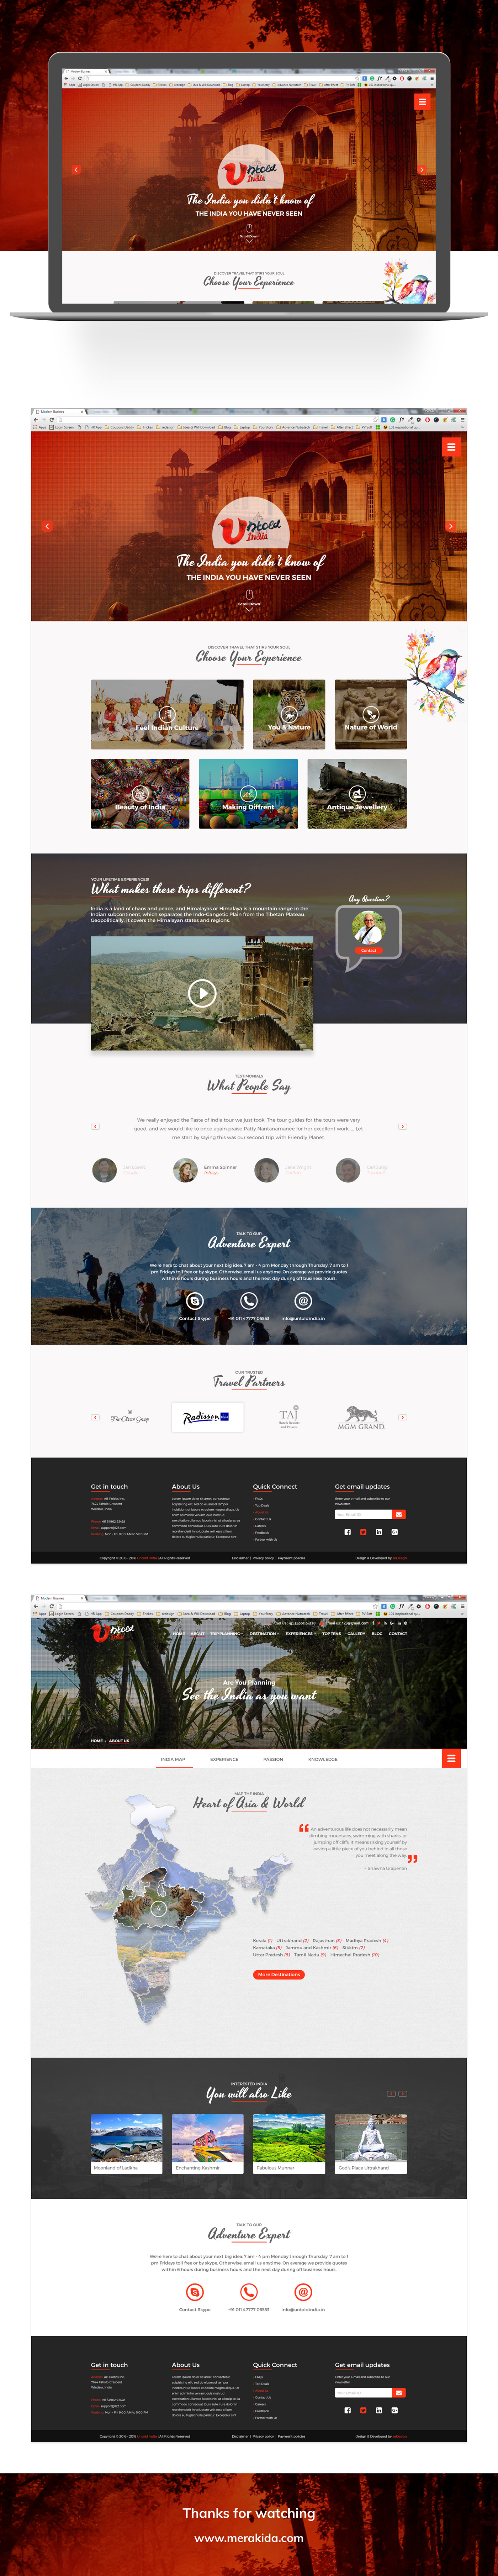 concept creative design inspirational Landing Page  Desig Mockup tourism Travel UI/UX Design Website